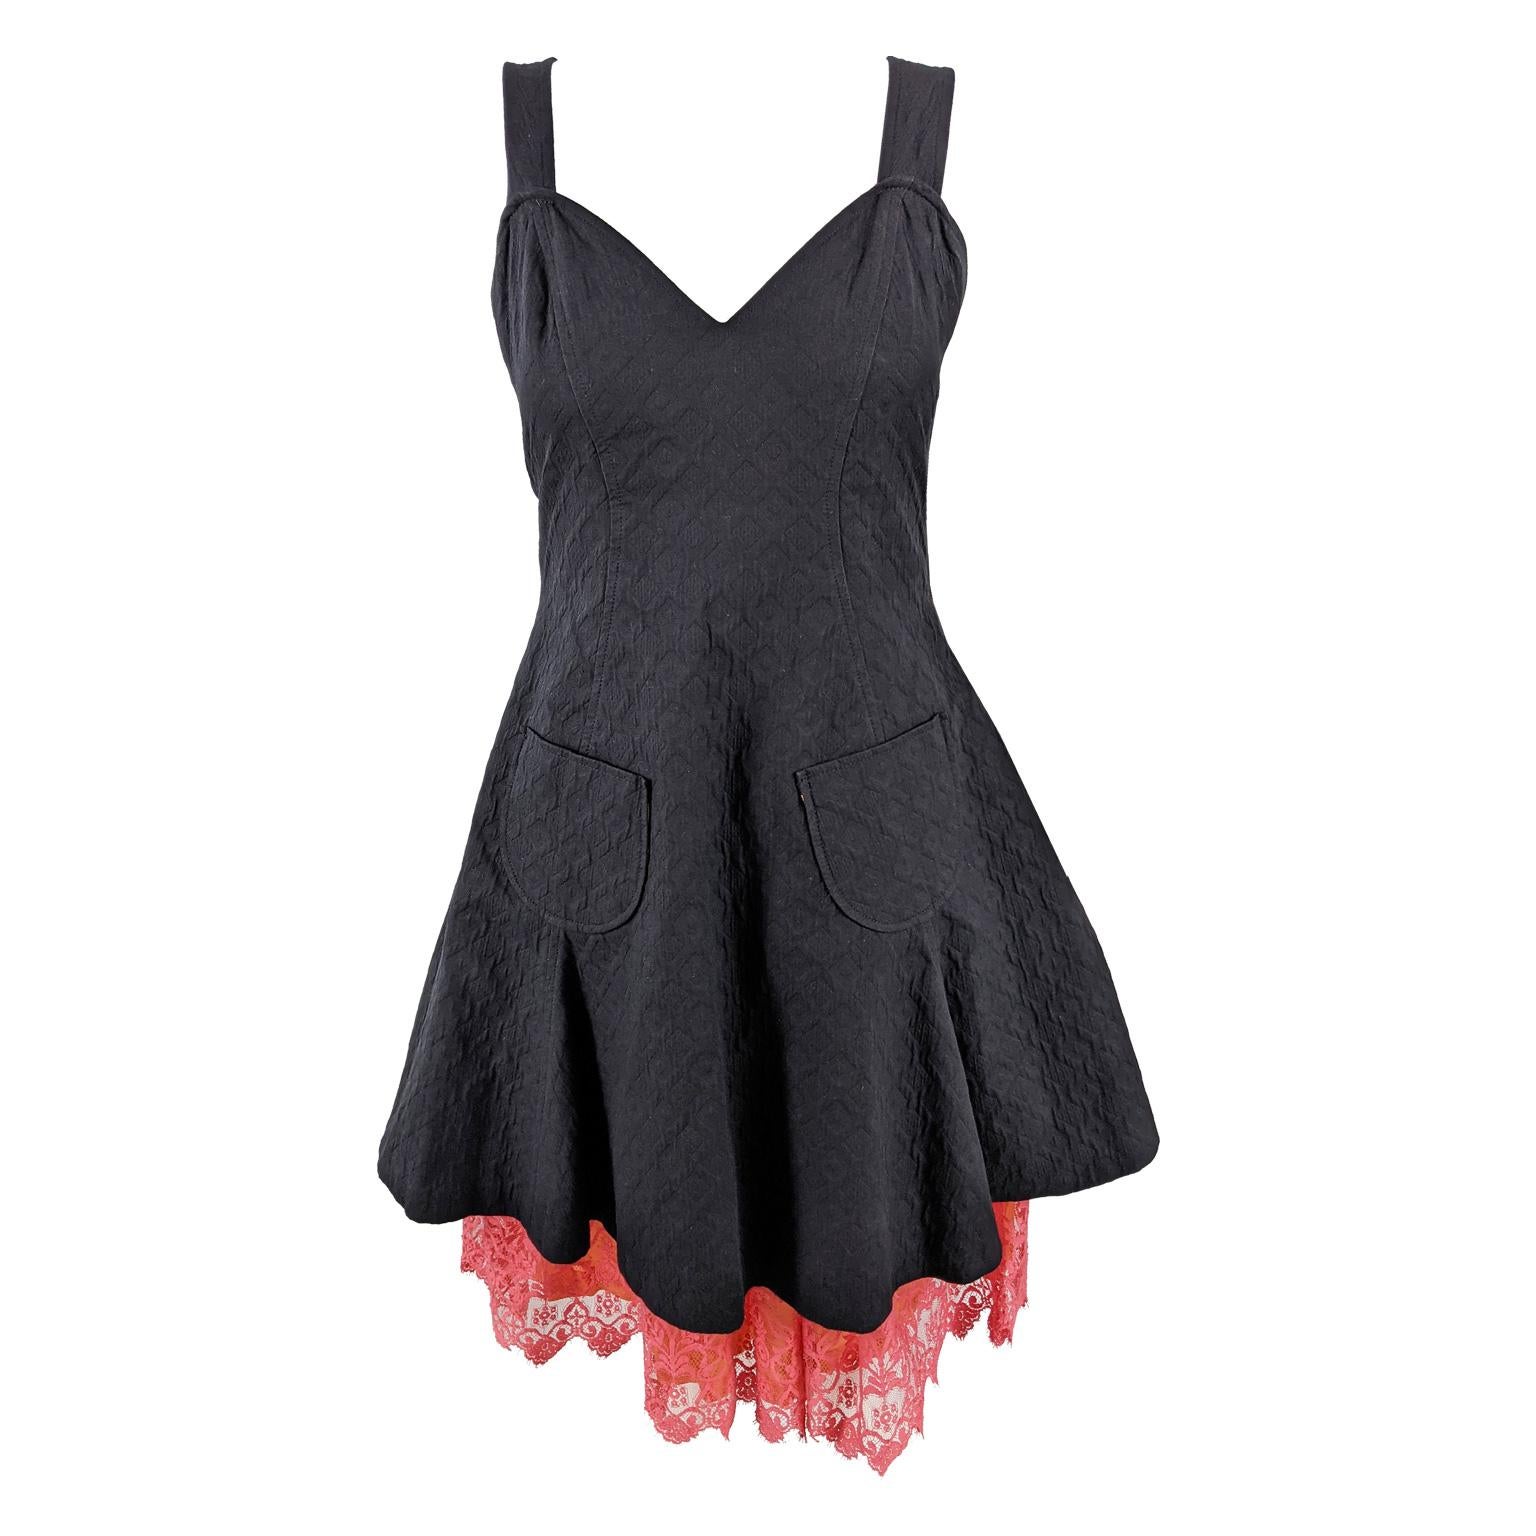 Christian Lacroix Bazar Vintage Black Apron & Coral Lace Dress, 1990s For Sale